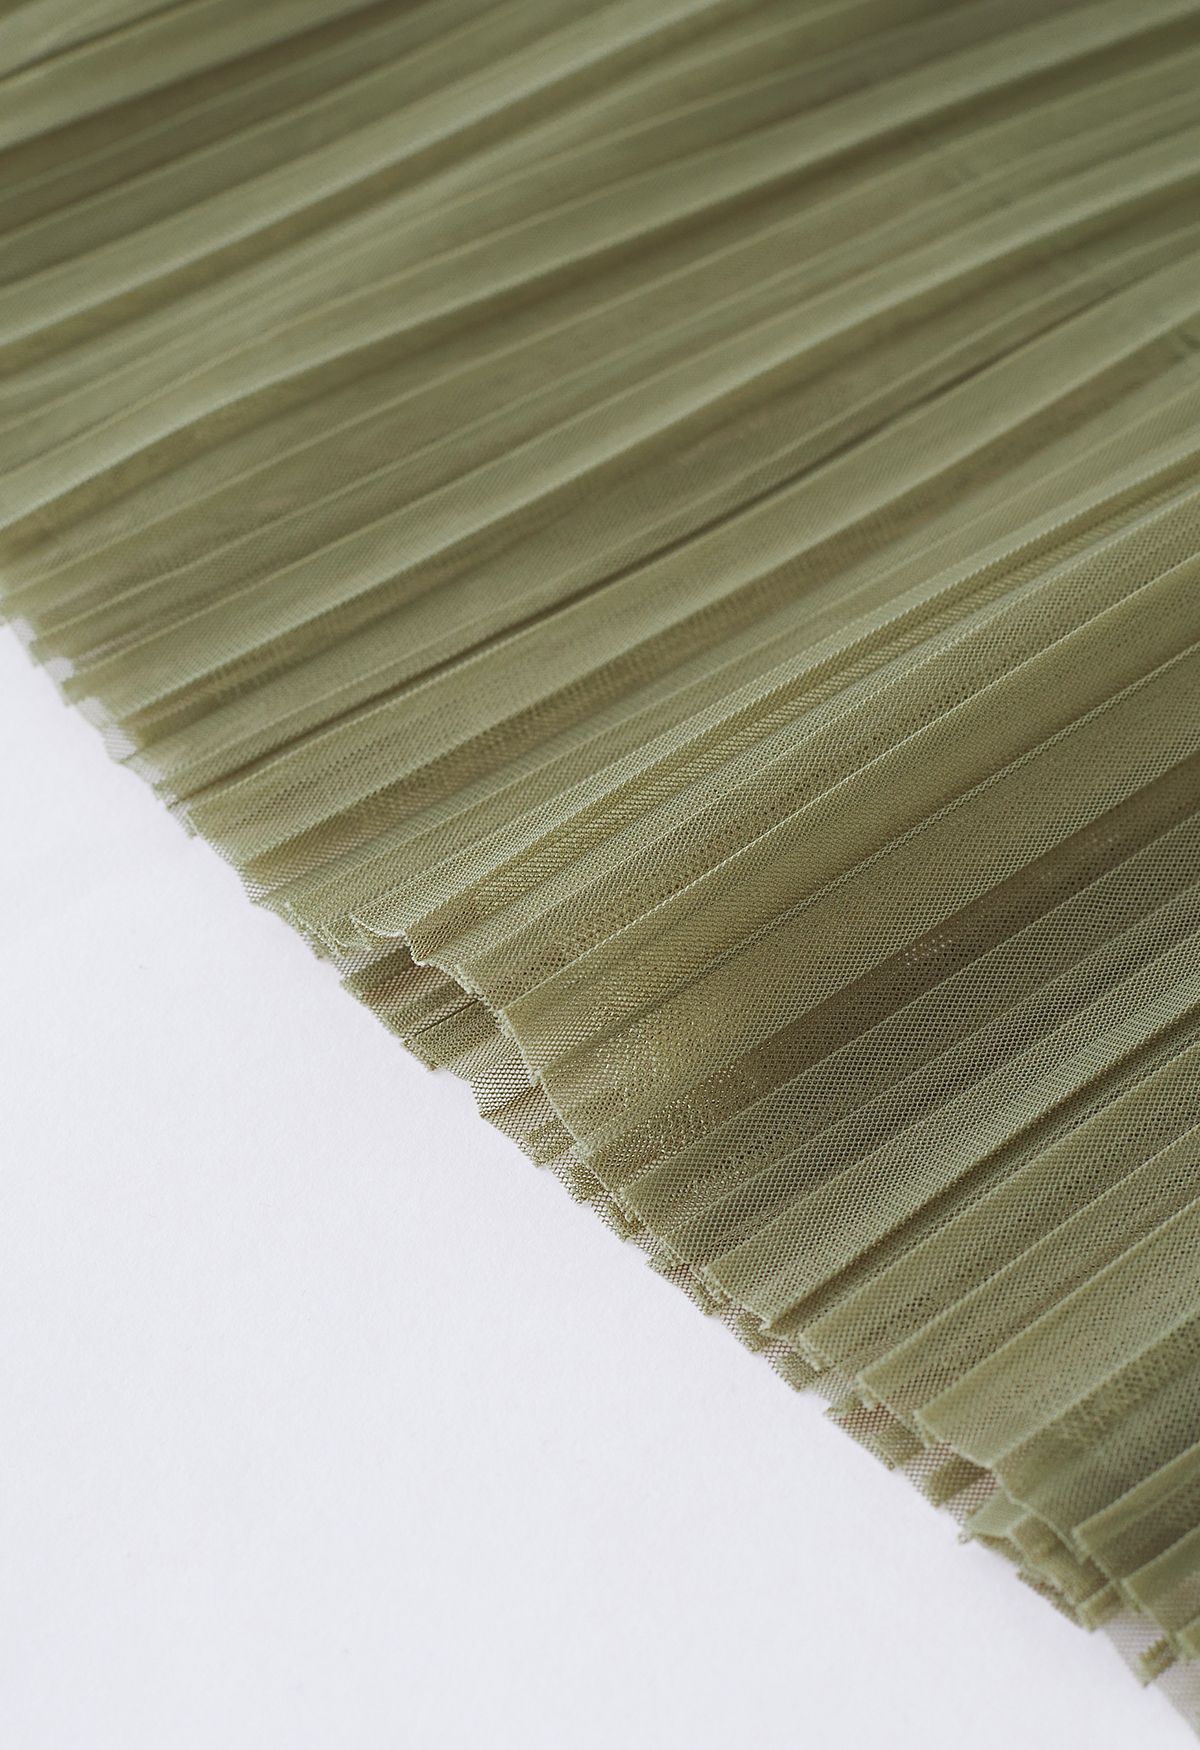 Falda de tul de malla de doble capa plisada en verde musgo